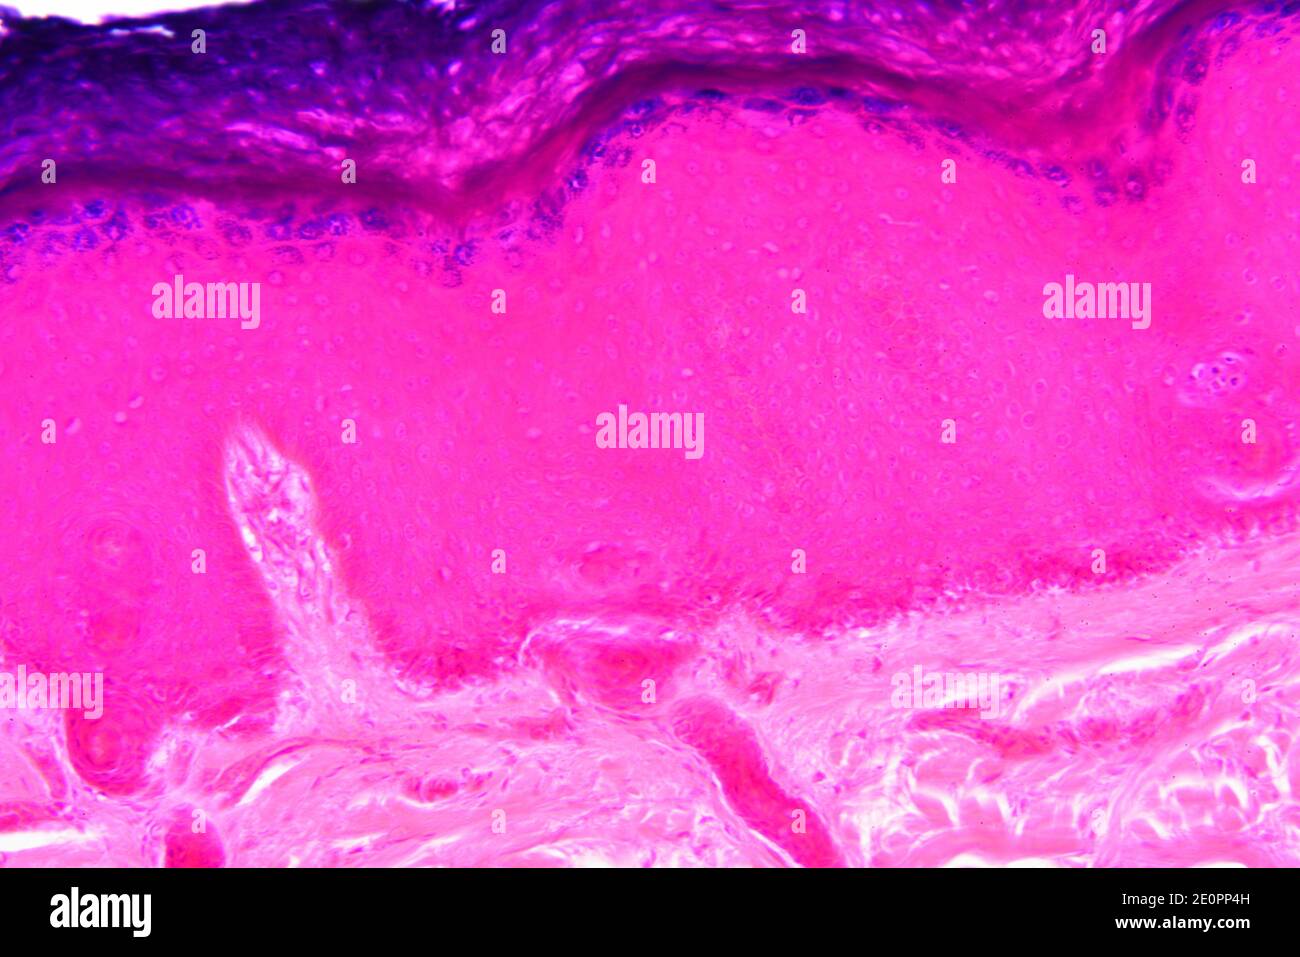 Menschliche Haut von oben nach unten: Epidermis mit Stratum corneum, Stratum granulosum, Stratum spinosum, Stratum basale und Dermis. X125 bei 10 cm Stockfoto